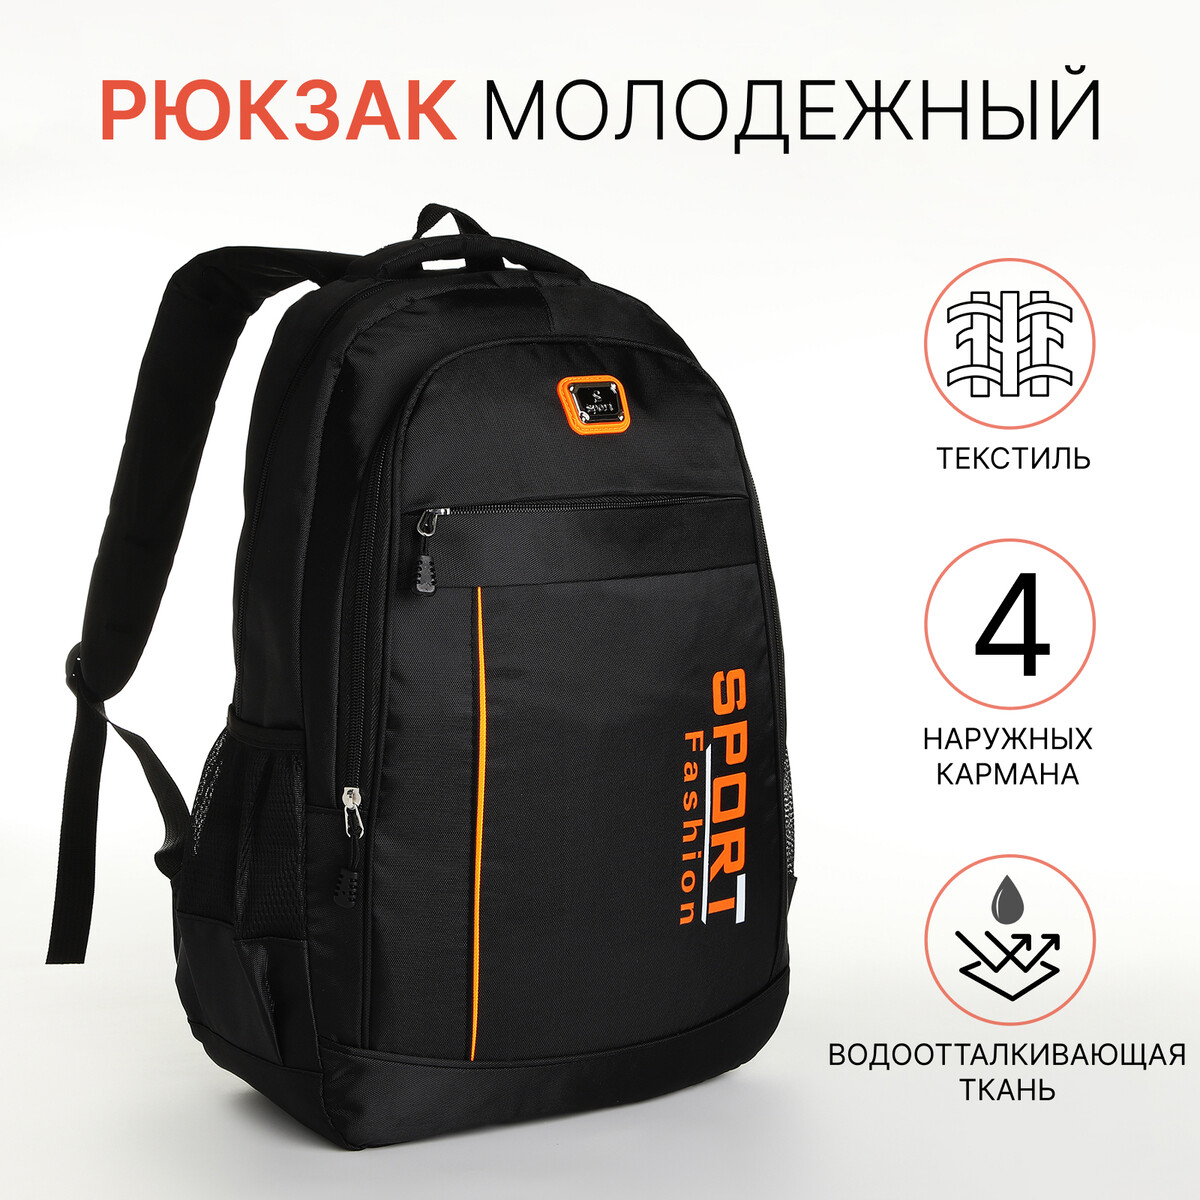 Рюкзак молодежный на молнии, 4 кармана, цвет черный/оранжевый рюкзак молодежный grizzly анатомический оранжевый rb 456 4 1